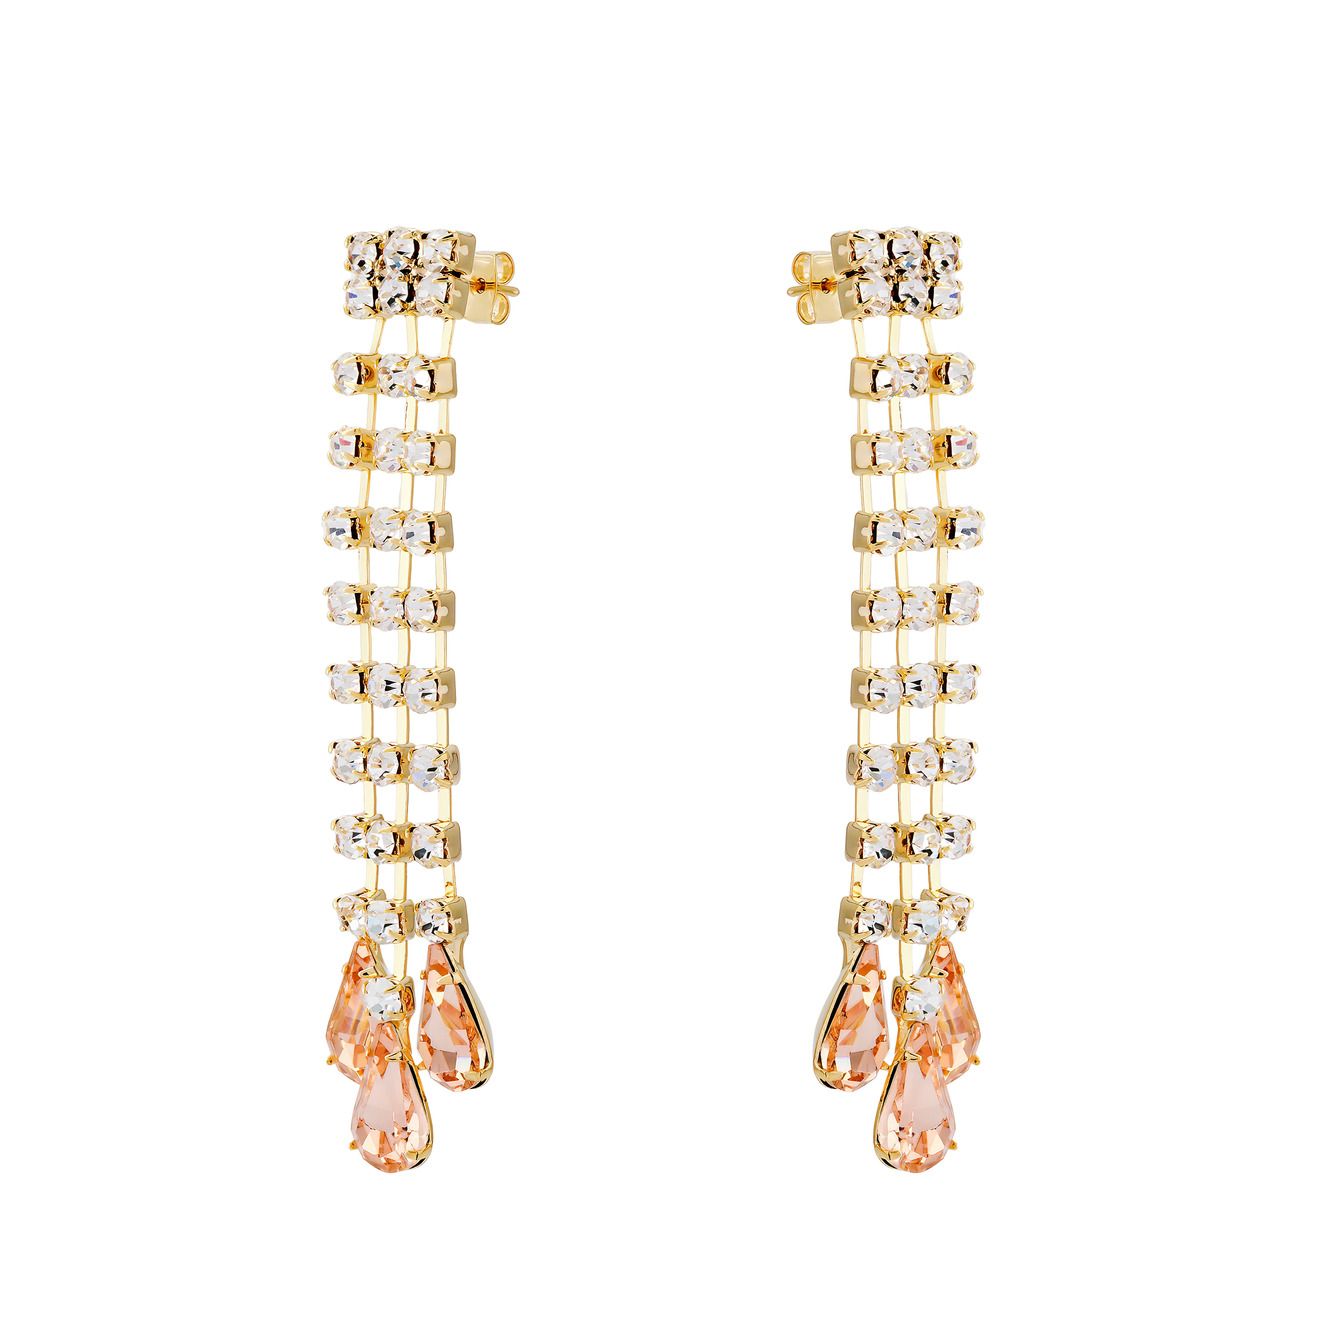 Herald Percy Золотистые серьги-дождики с дорожками из кристаллов и розовыми каплями herald percy серебристые полукруглые серьги с дорожками из белых кристаллов